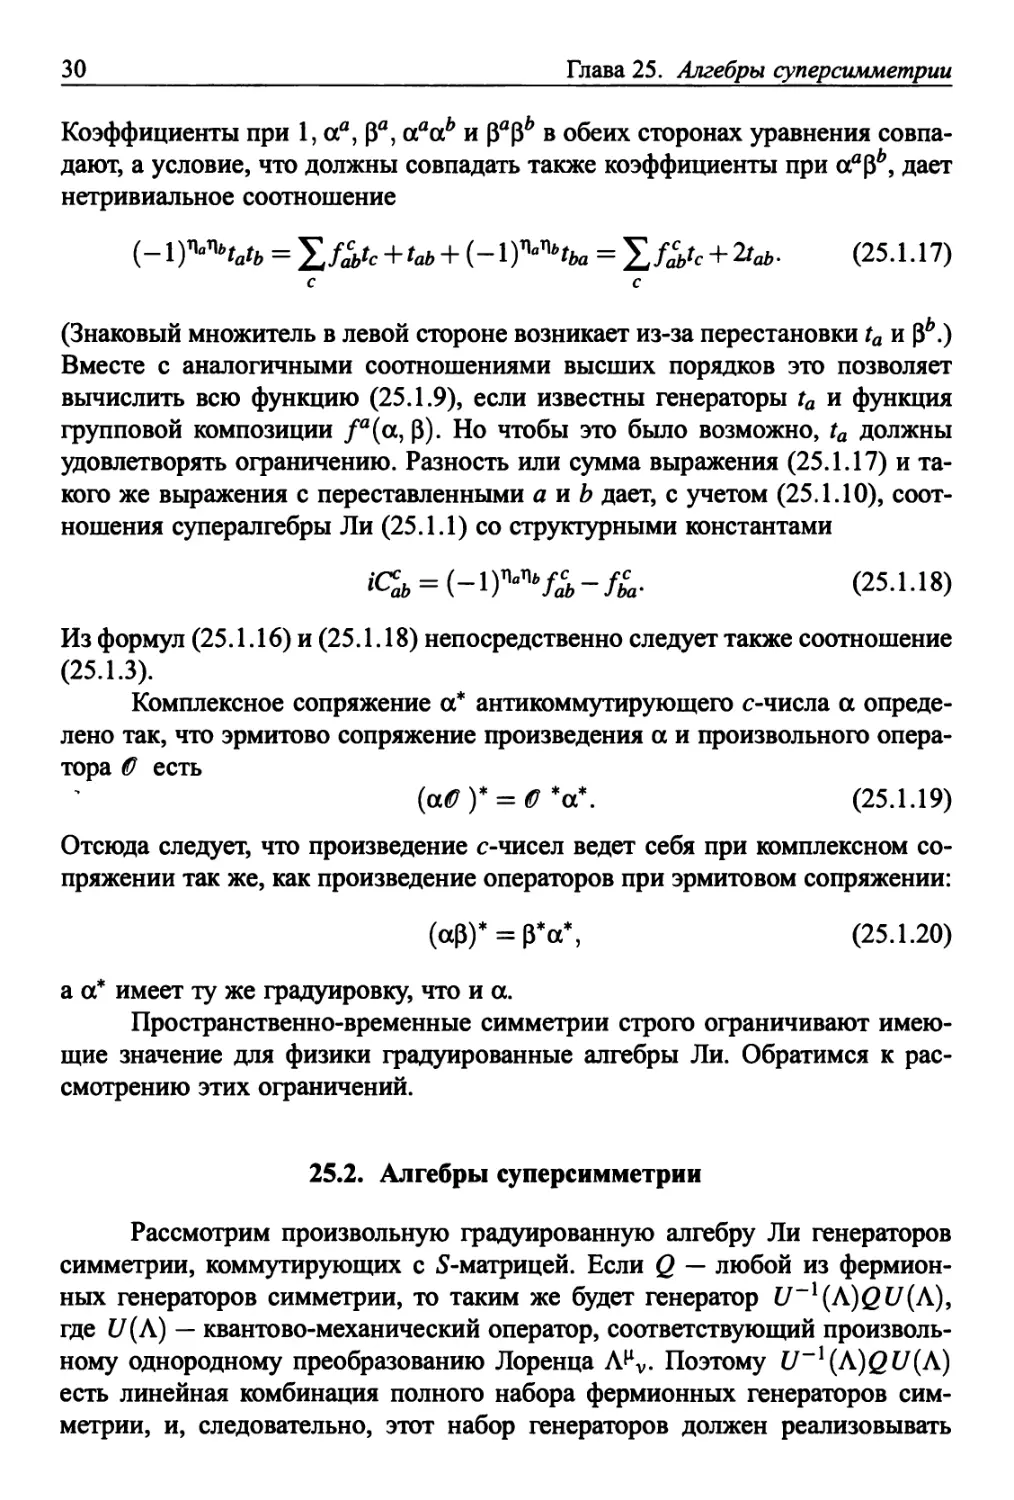 25.2. Алгебры суперсимметрии